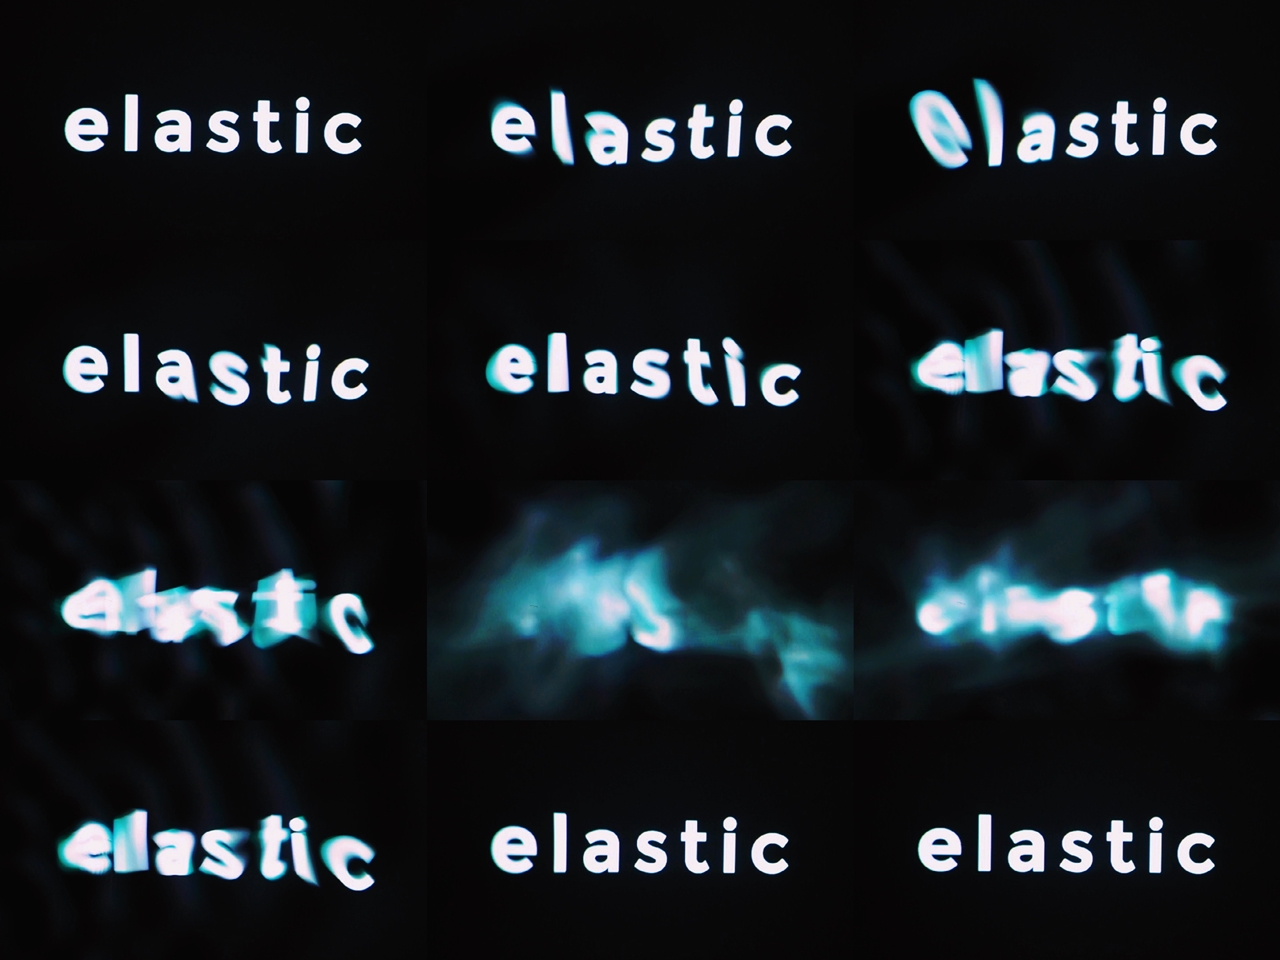 elasticloop_fb_4-tile_w